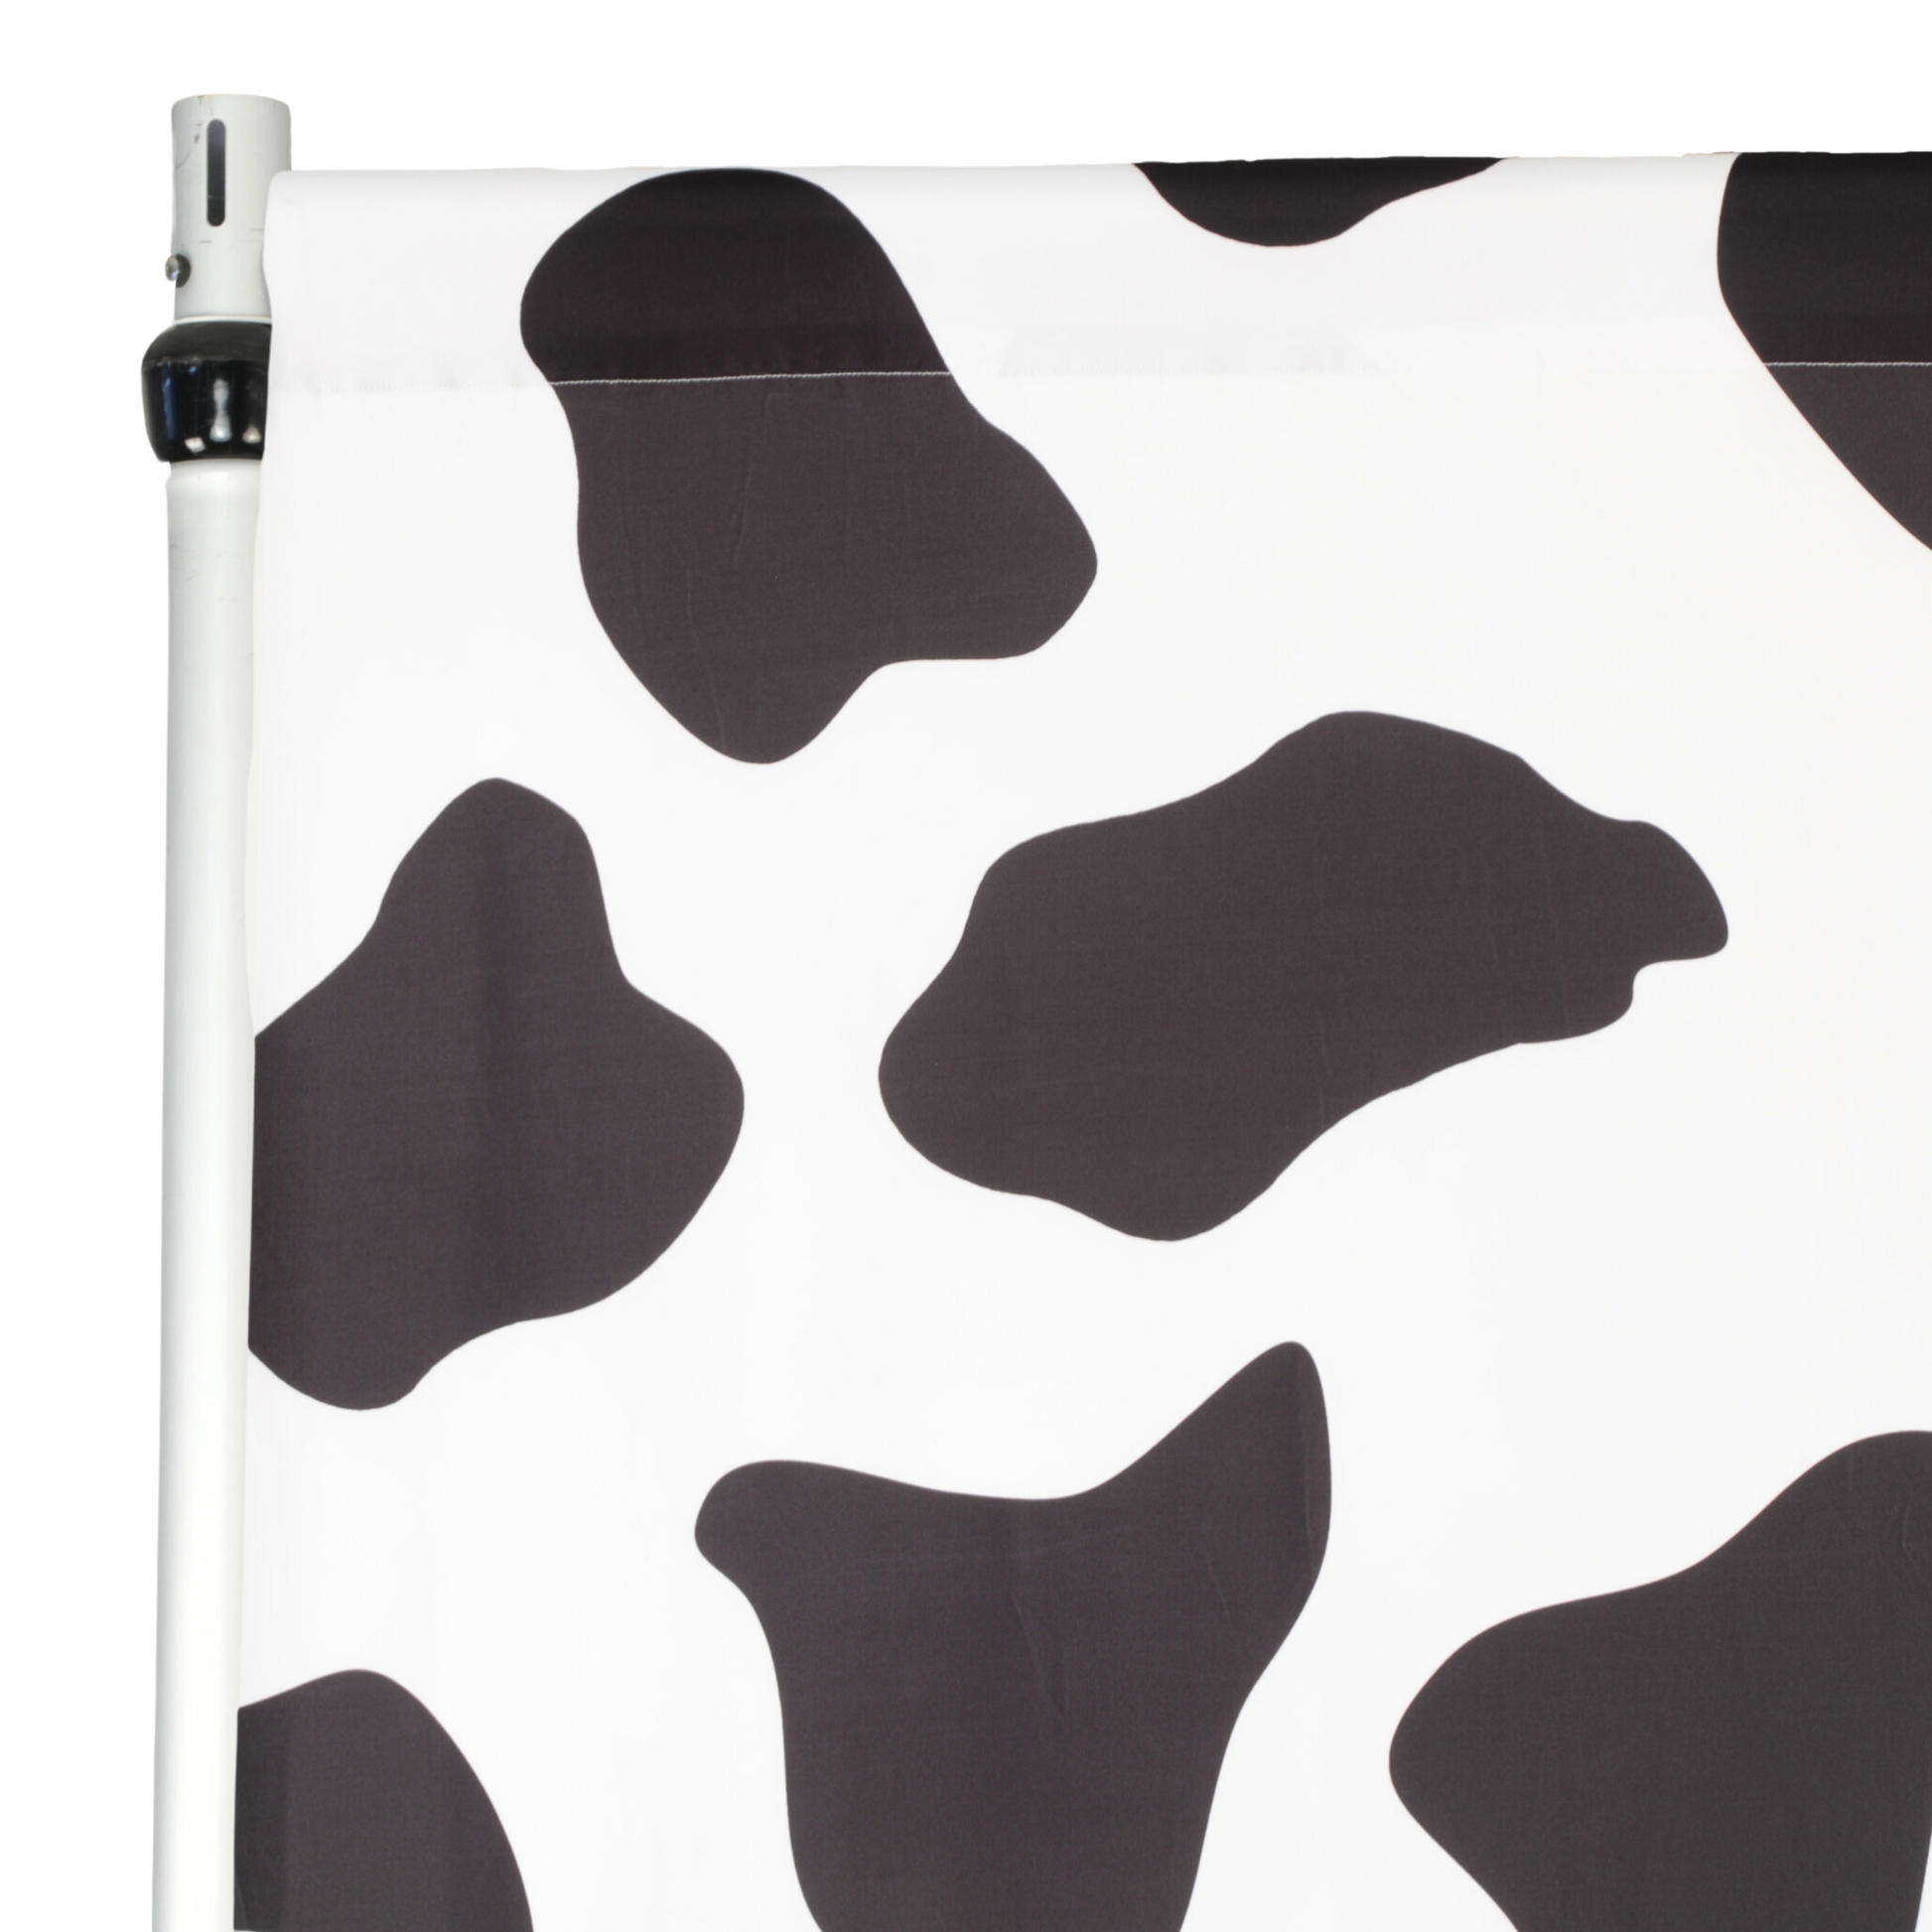 Cow Animal Print Spandex 4-way Stretch Drape Curtain 12ft H x 60" W